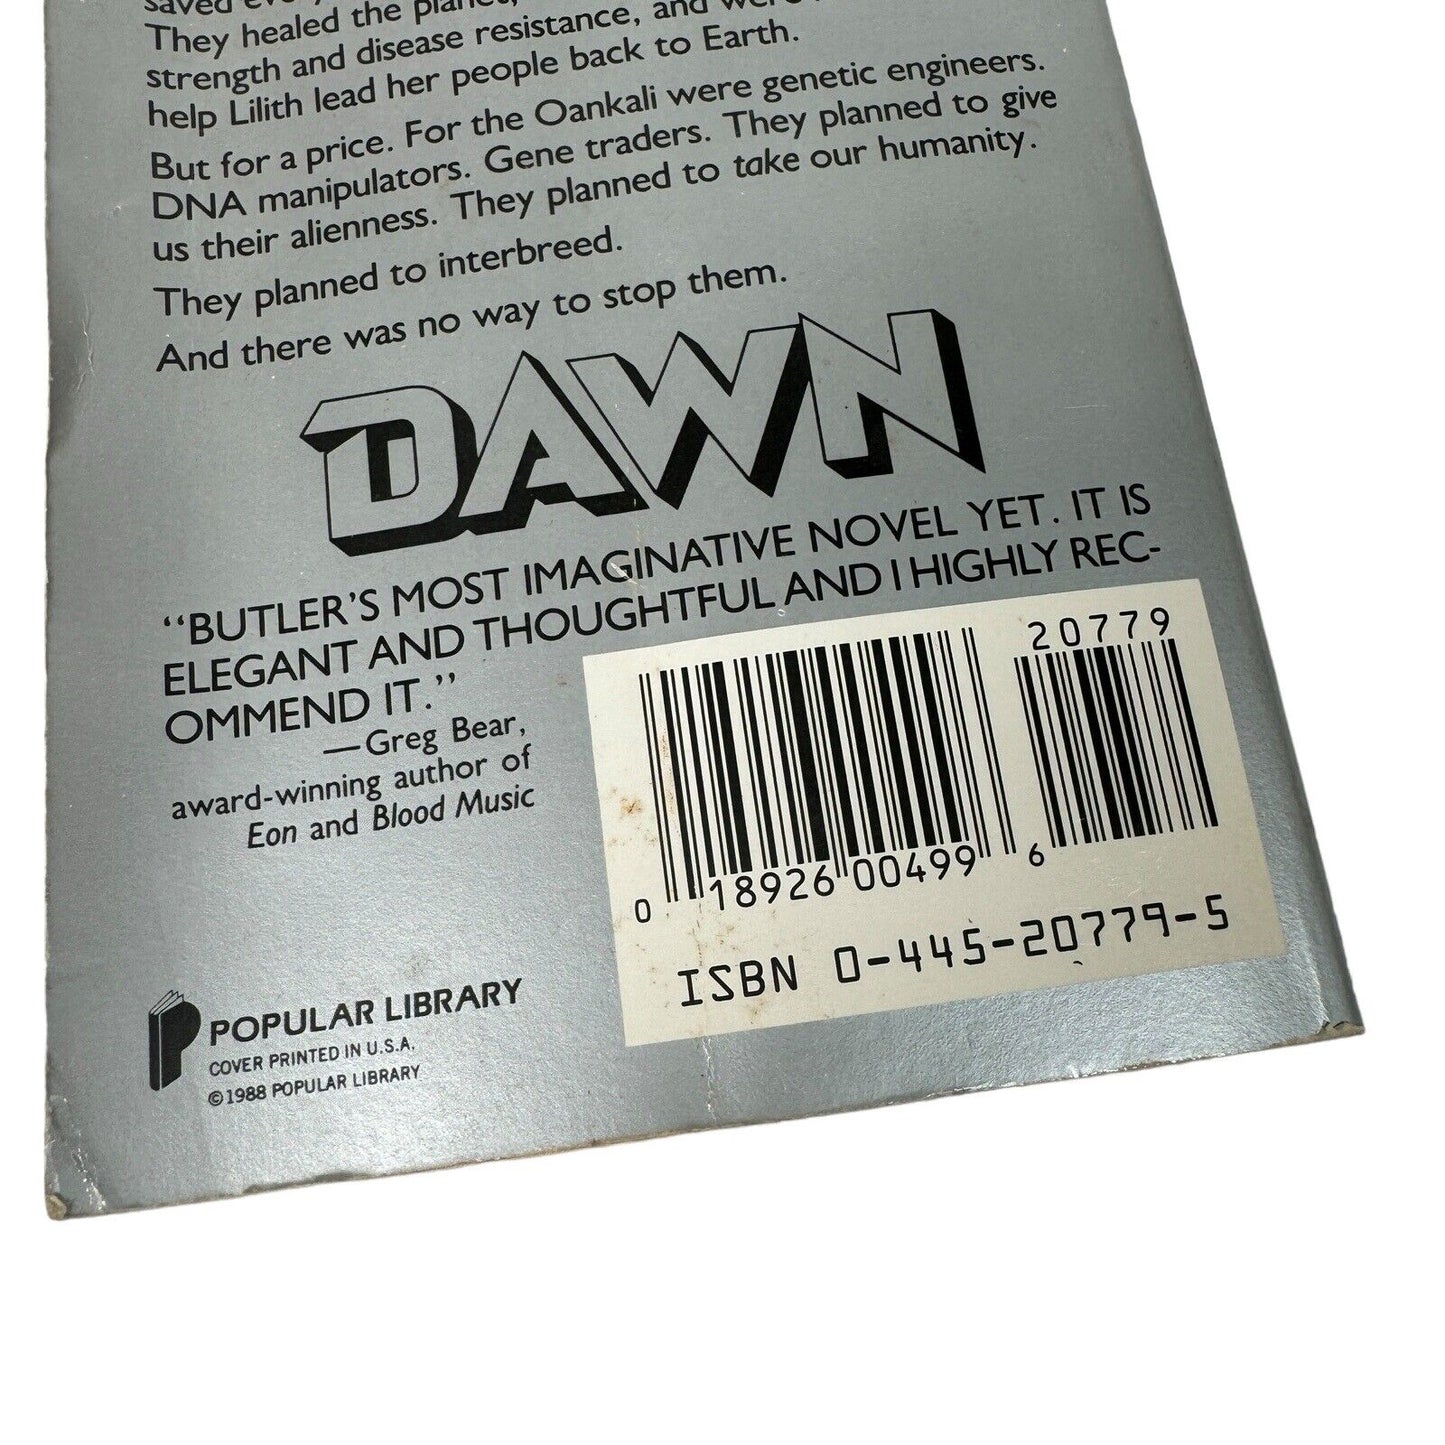 Dawn Xenogenesis Octavia E. Butler Popular Library Paperback 1988 Novel Questar